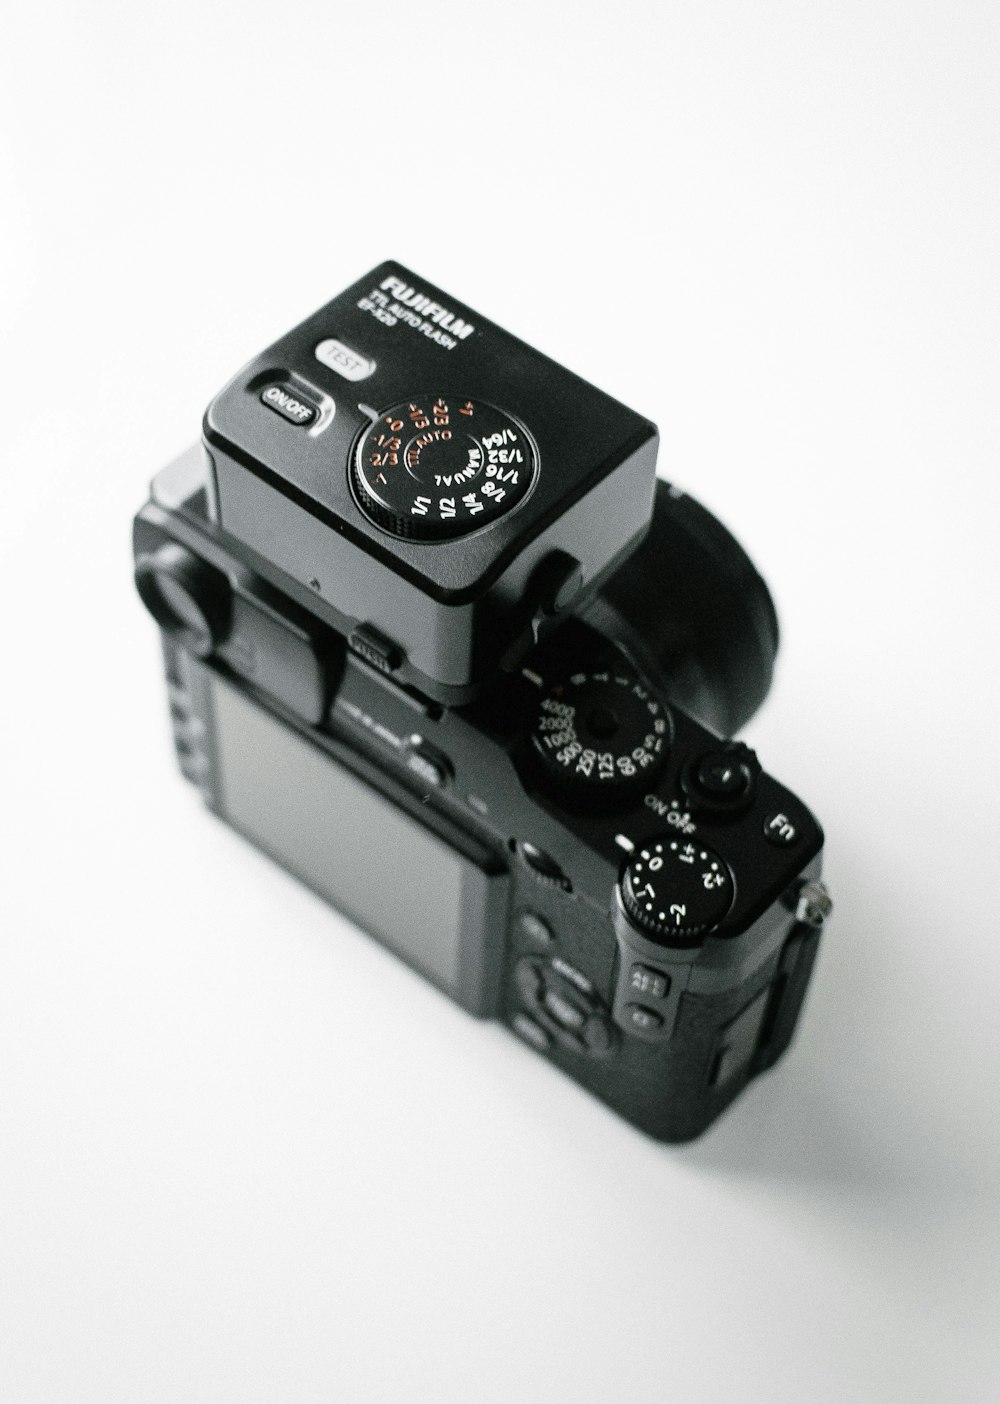 fotocamera reflex digitale Fujifilm nera